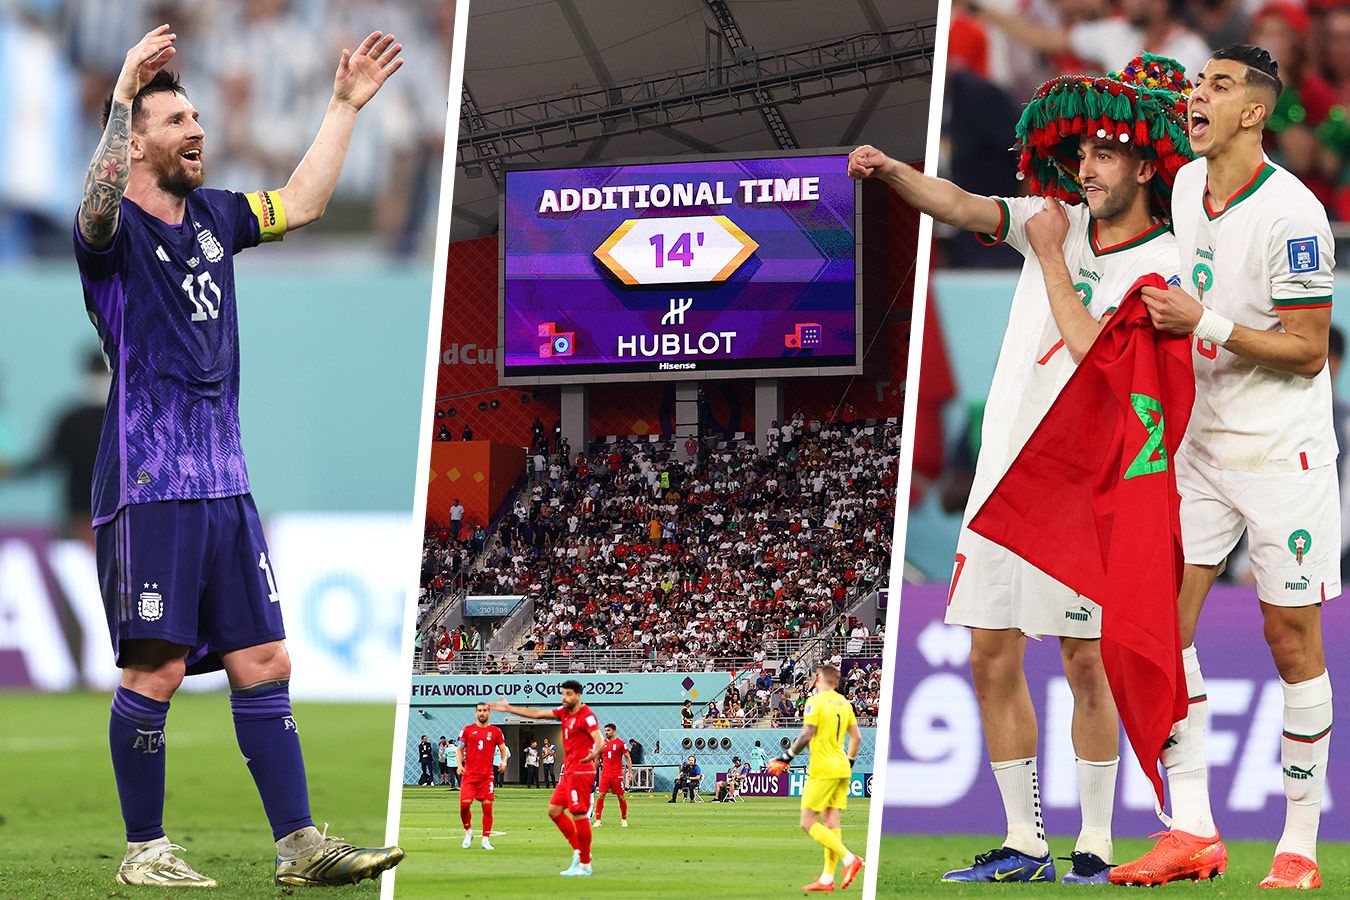 Чемпионат мира-2022 в Катаре: уникальные рекорды — самый долгий матч,  поздний гол, первая женщина-судья - Чемпионат